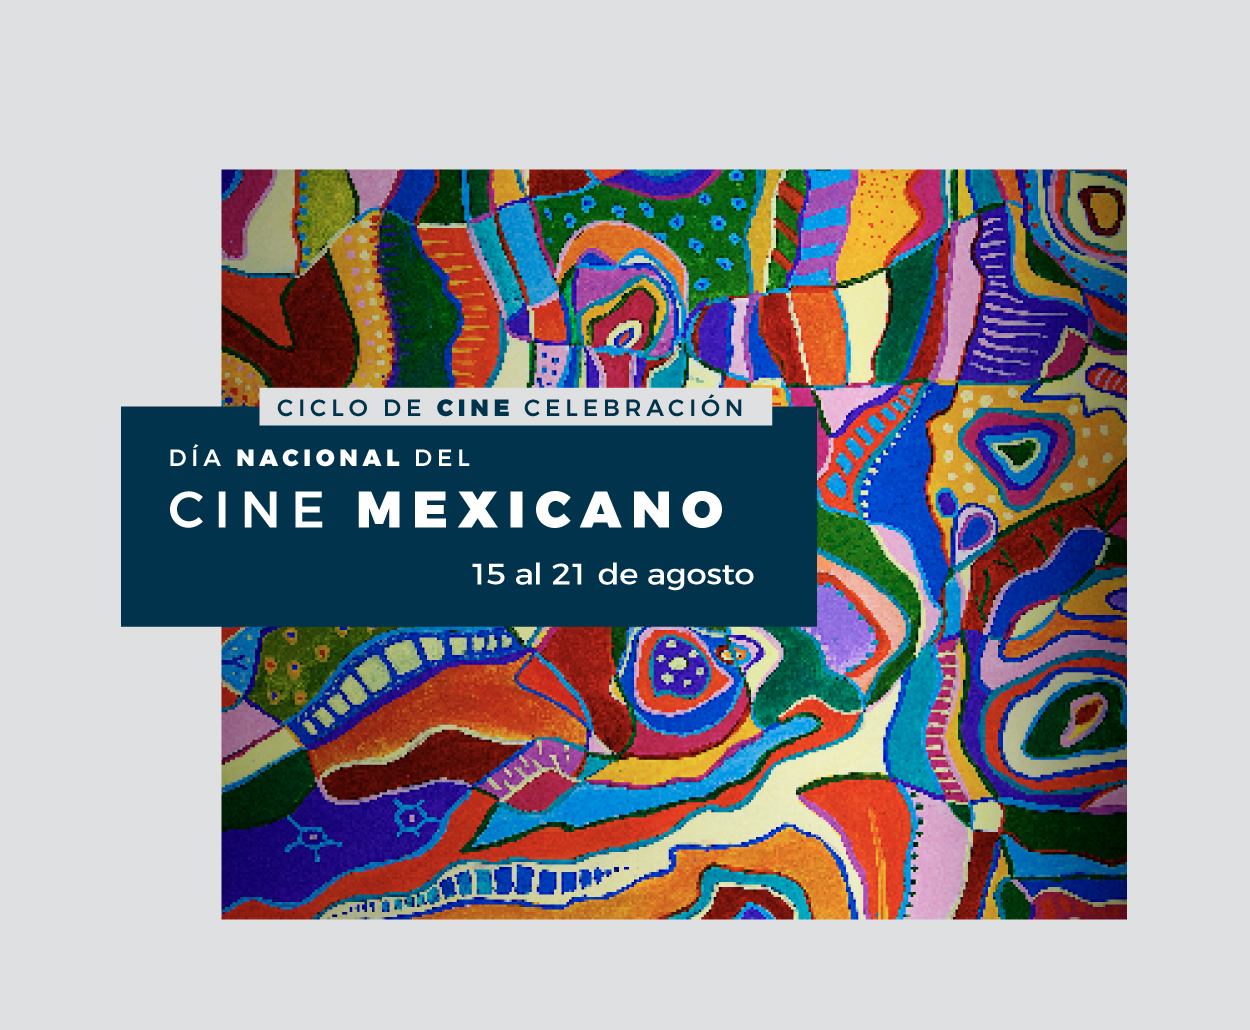 El SPR, a través del Canal Catorce y en colaboración con el IMCINE, presenta el Ciclo de Cine para conmemorar el Día del Cine Mexicano